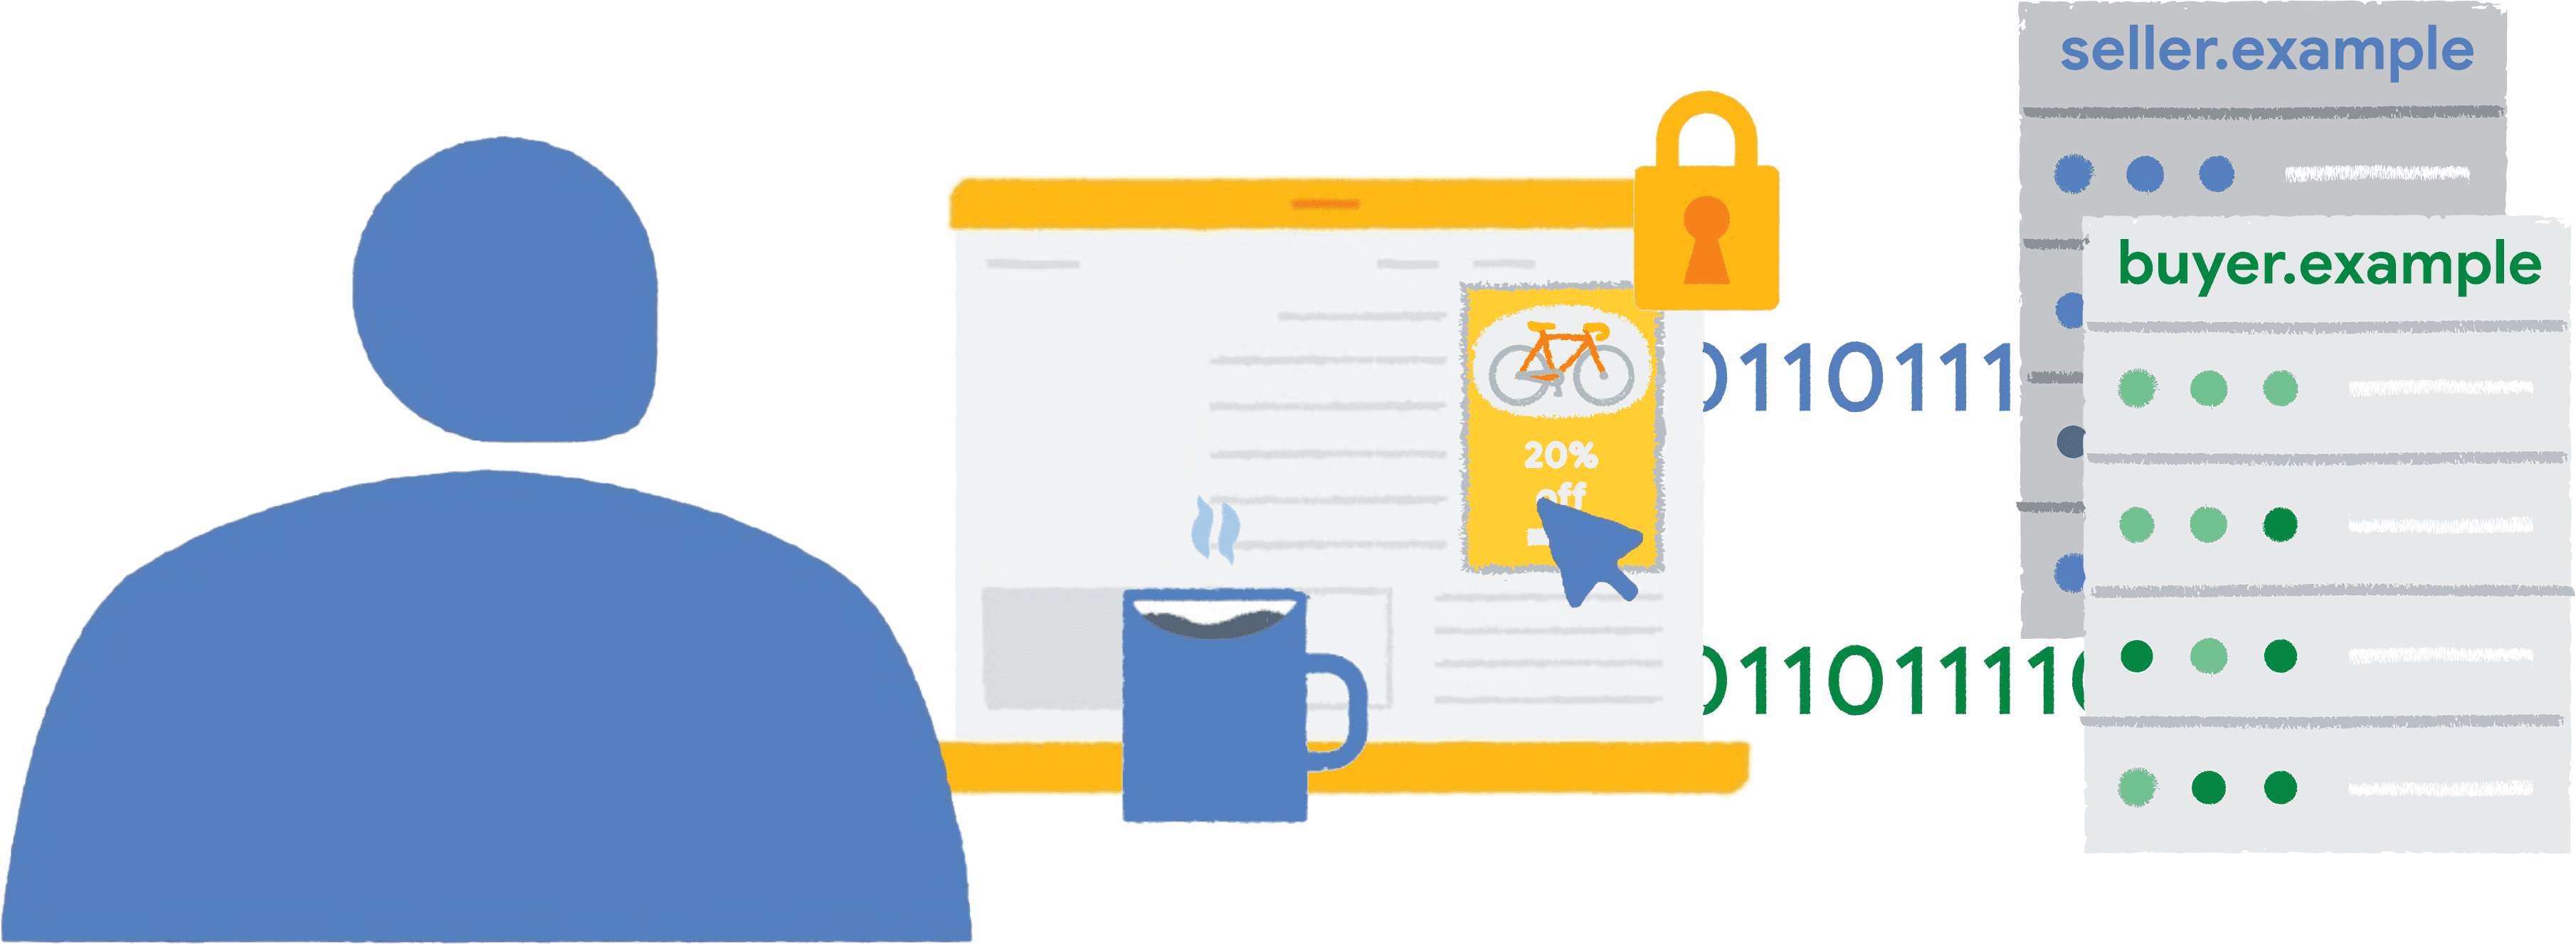 Bir kullanıcı, bir haber web sitesinde, çitle çevrili çerçeveye yerleştirilmiş bir bisiklet reklamını tıklıyor. Rapor verileri satıcıya ve alıcılara gönderilir.